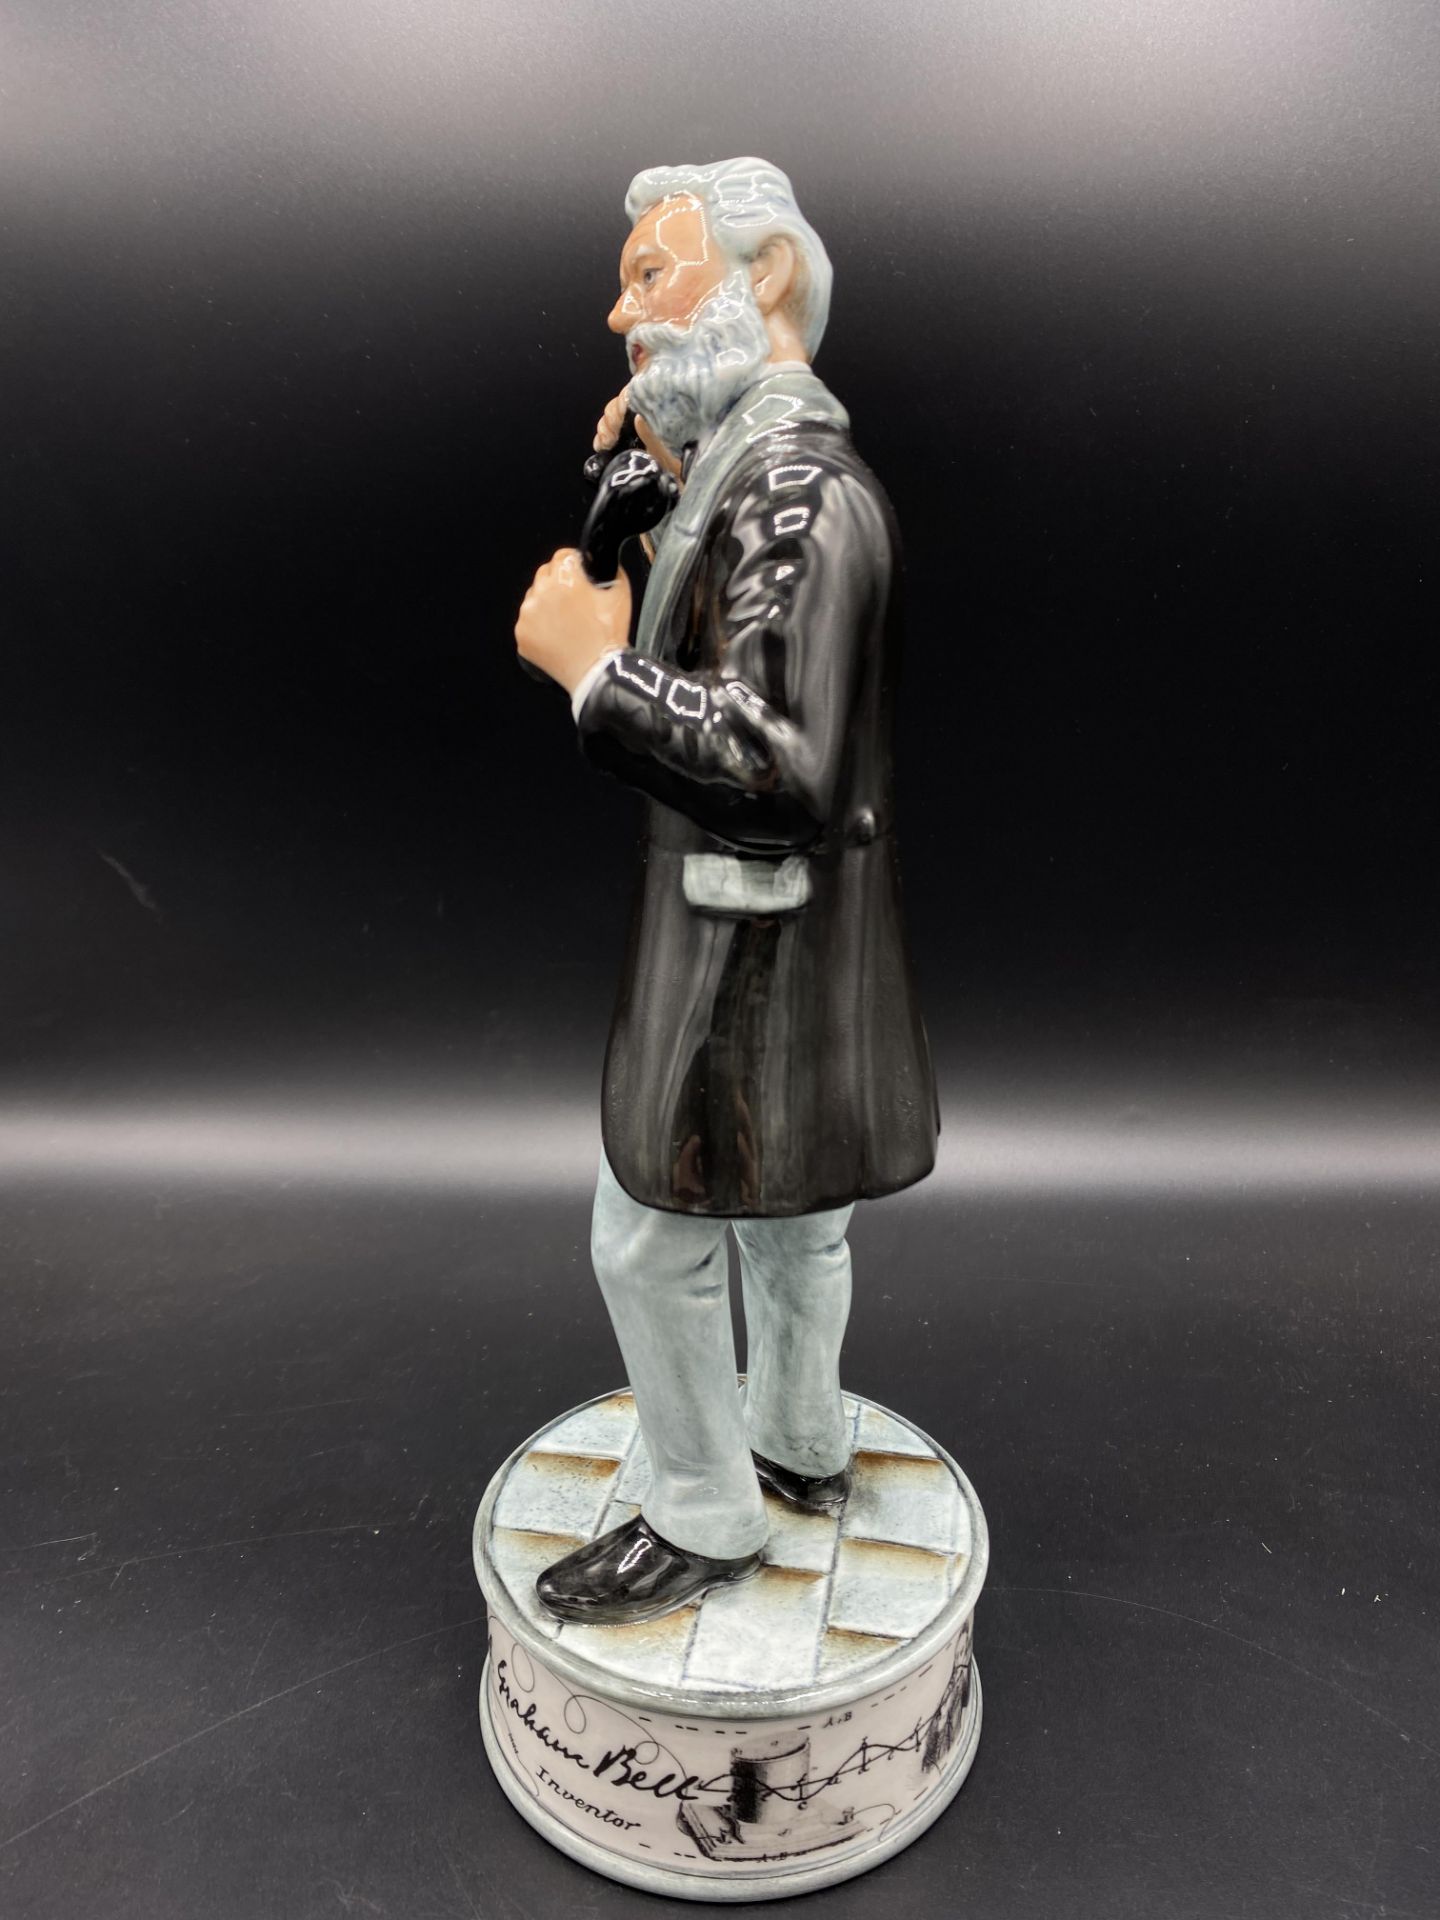 Royal Doulton Prestige figurine Alexander Graham Bell - Image 2 of 4